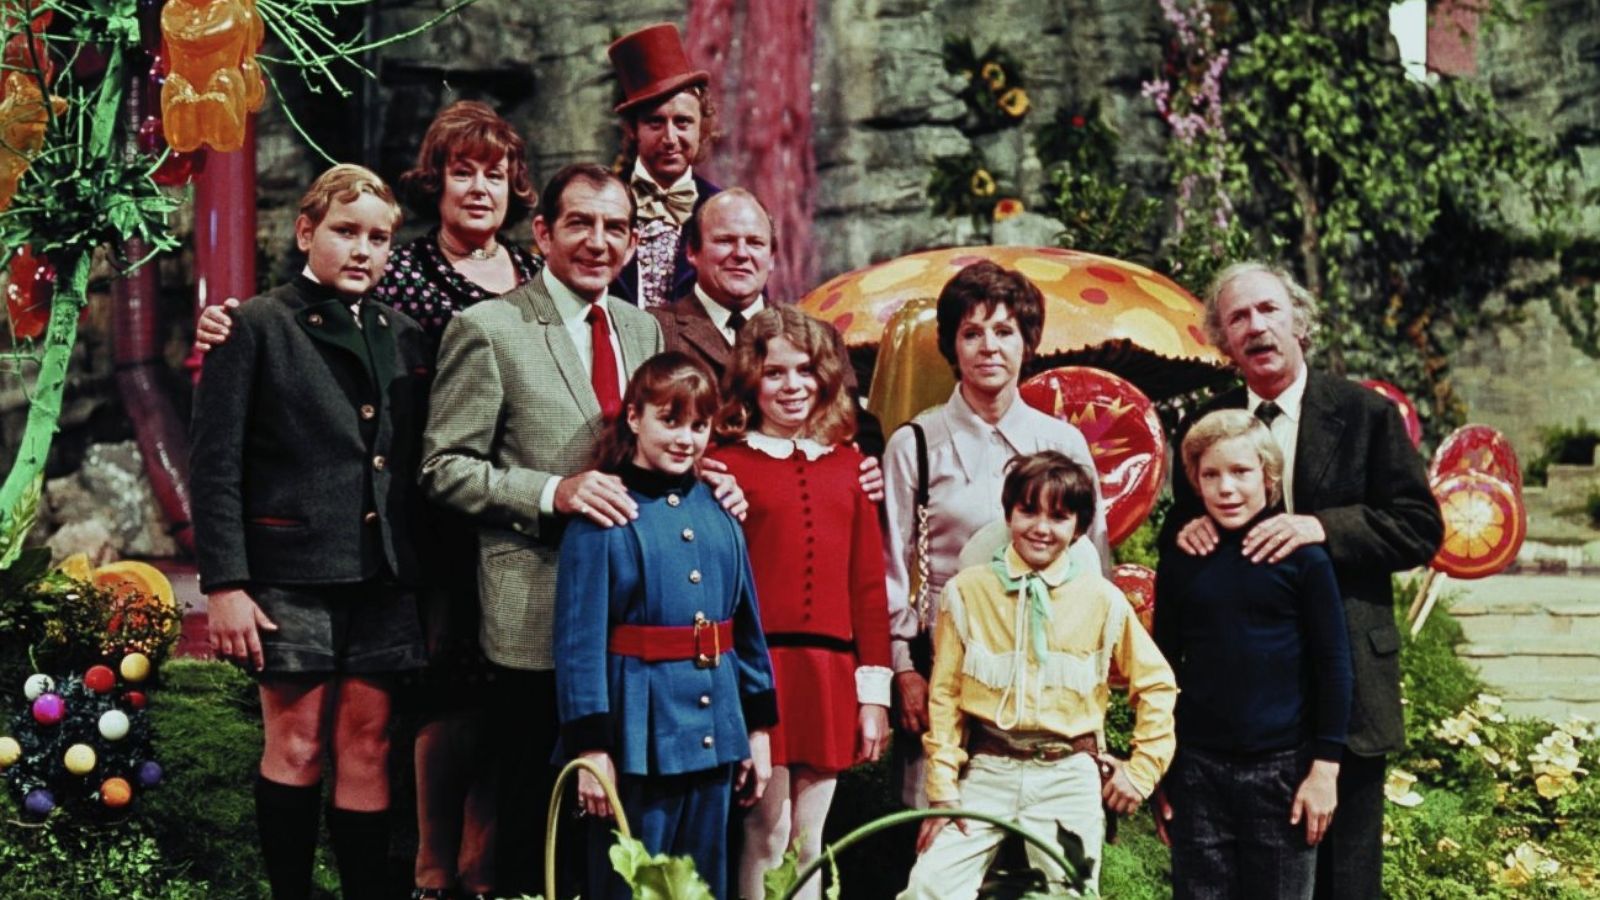 Willy Wonka Kids Pay Tribute to Gene Wilder